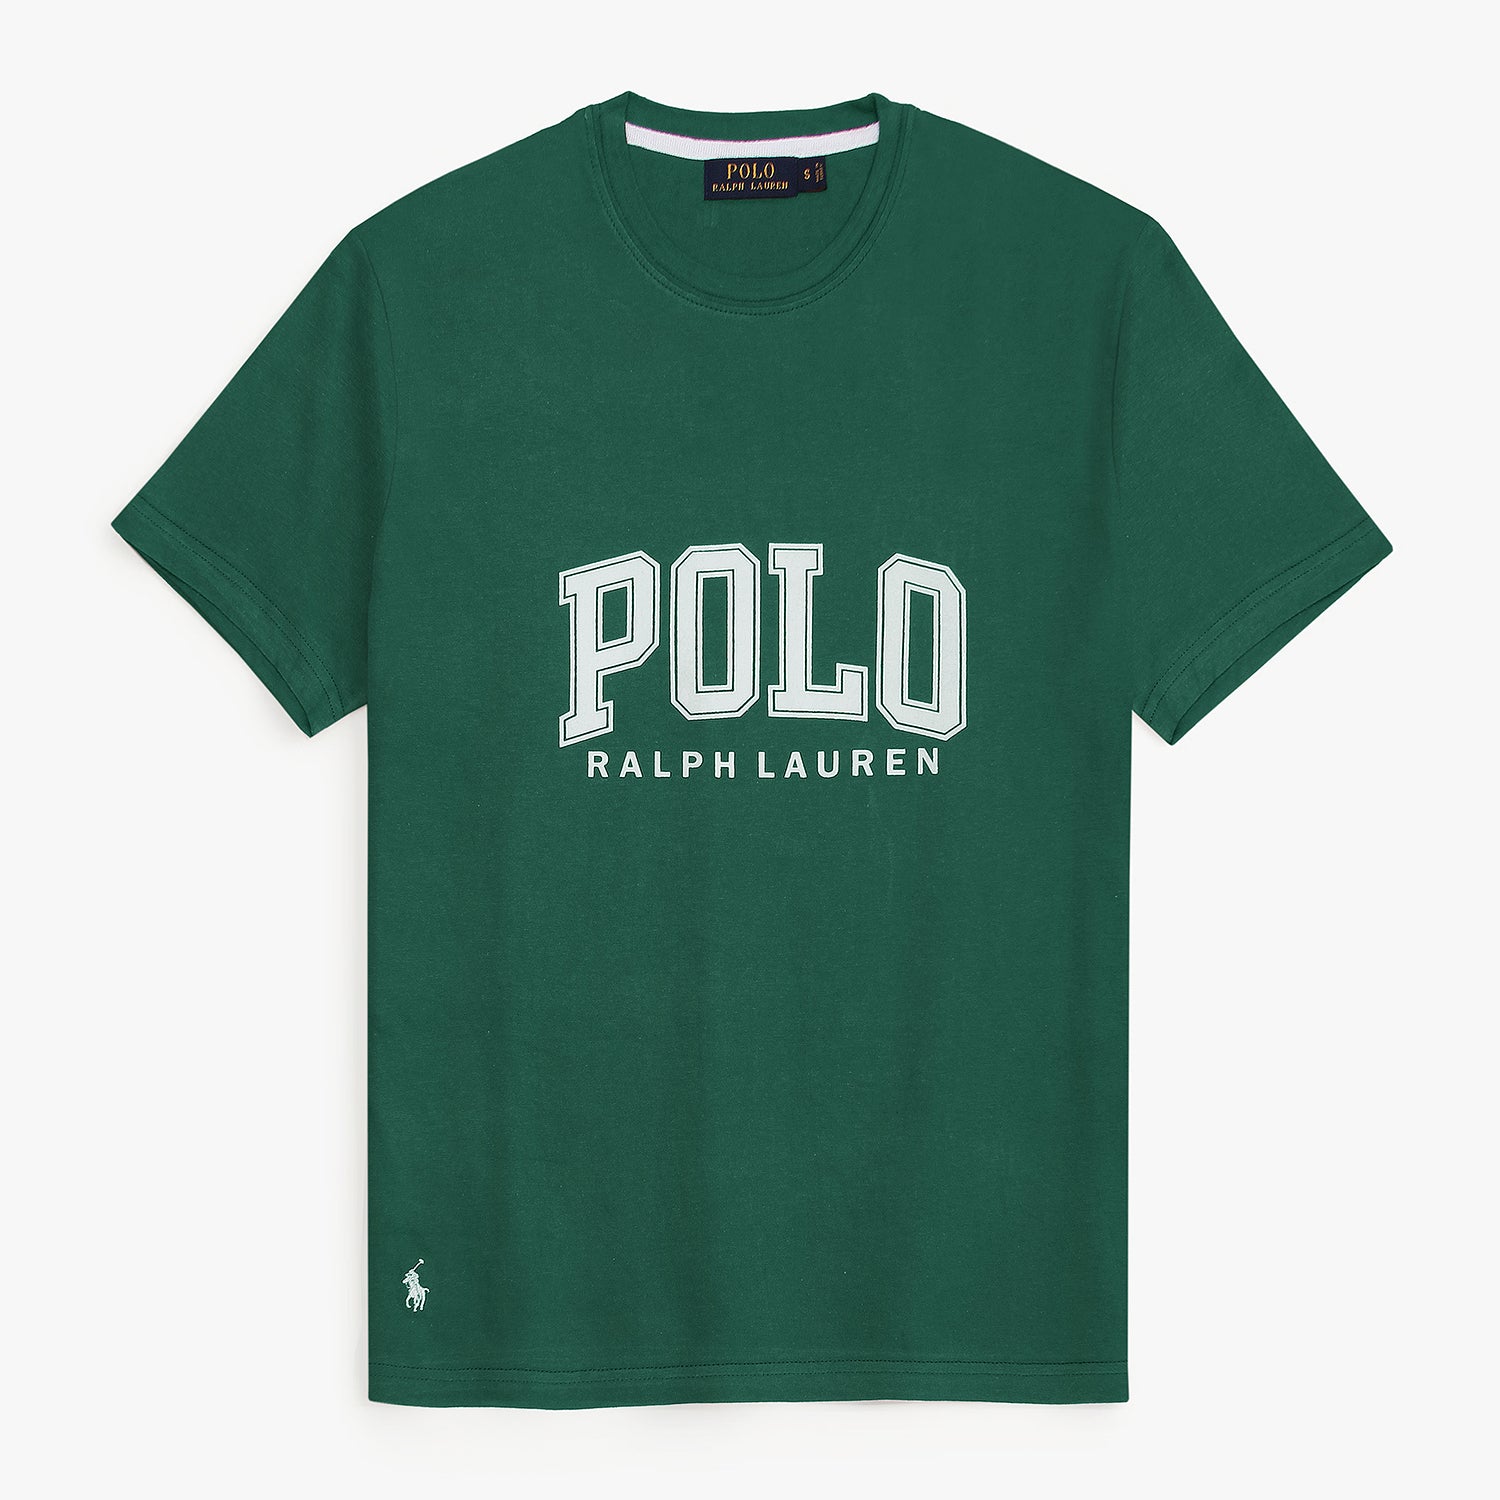 Prl POLO tshirt-british green